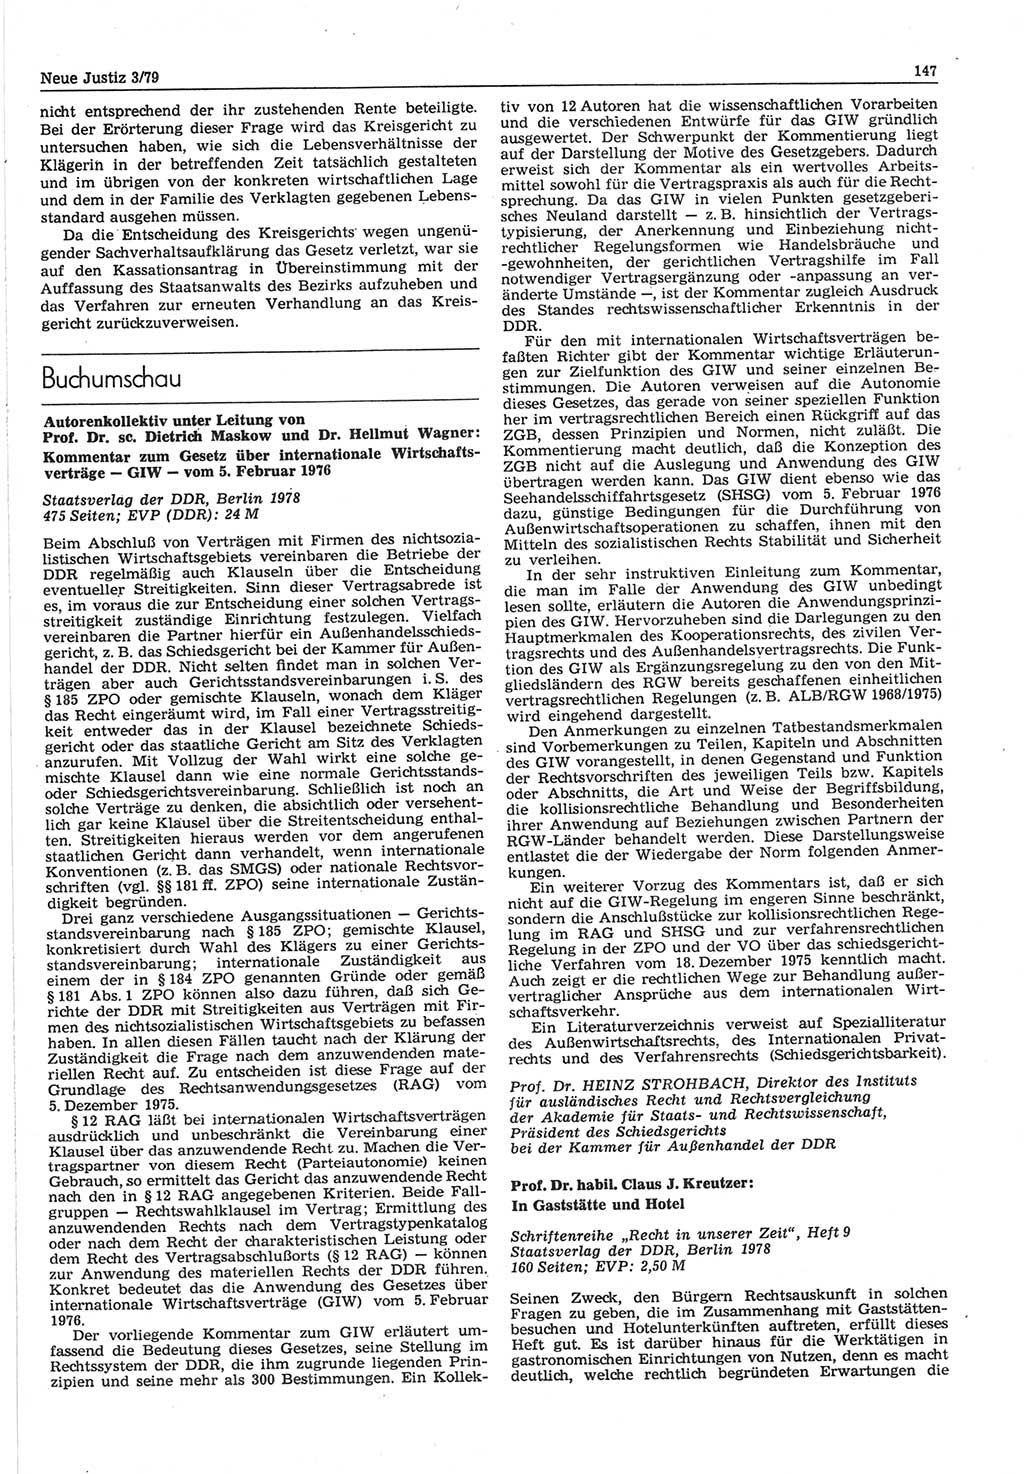 Neue Justiz (NJ), Zeitschrift für sozialistisches Recht und Gesetzlichkeit [Deutsche Demokratische Republik (DDR)], 33. Jahrgang 1979, Seite 147 (NJ DDR 1979, S. 147)